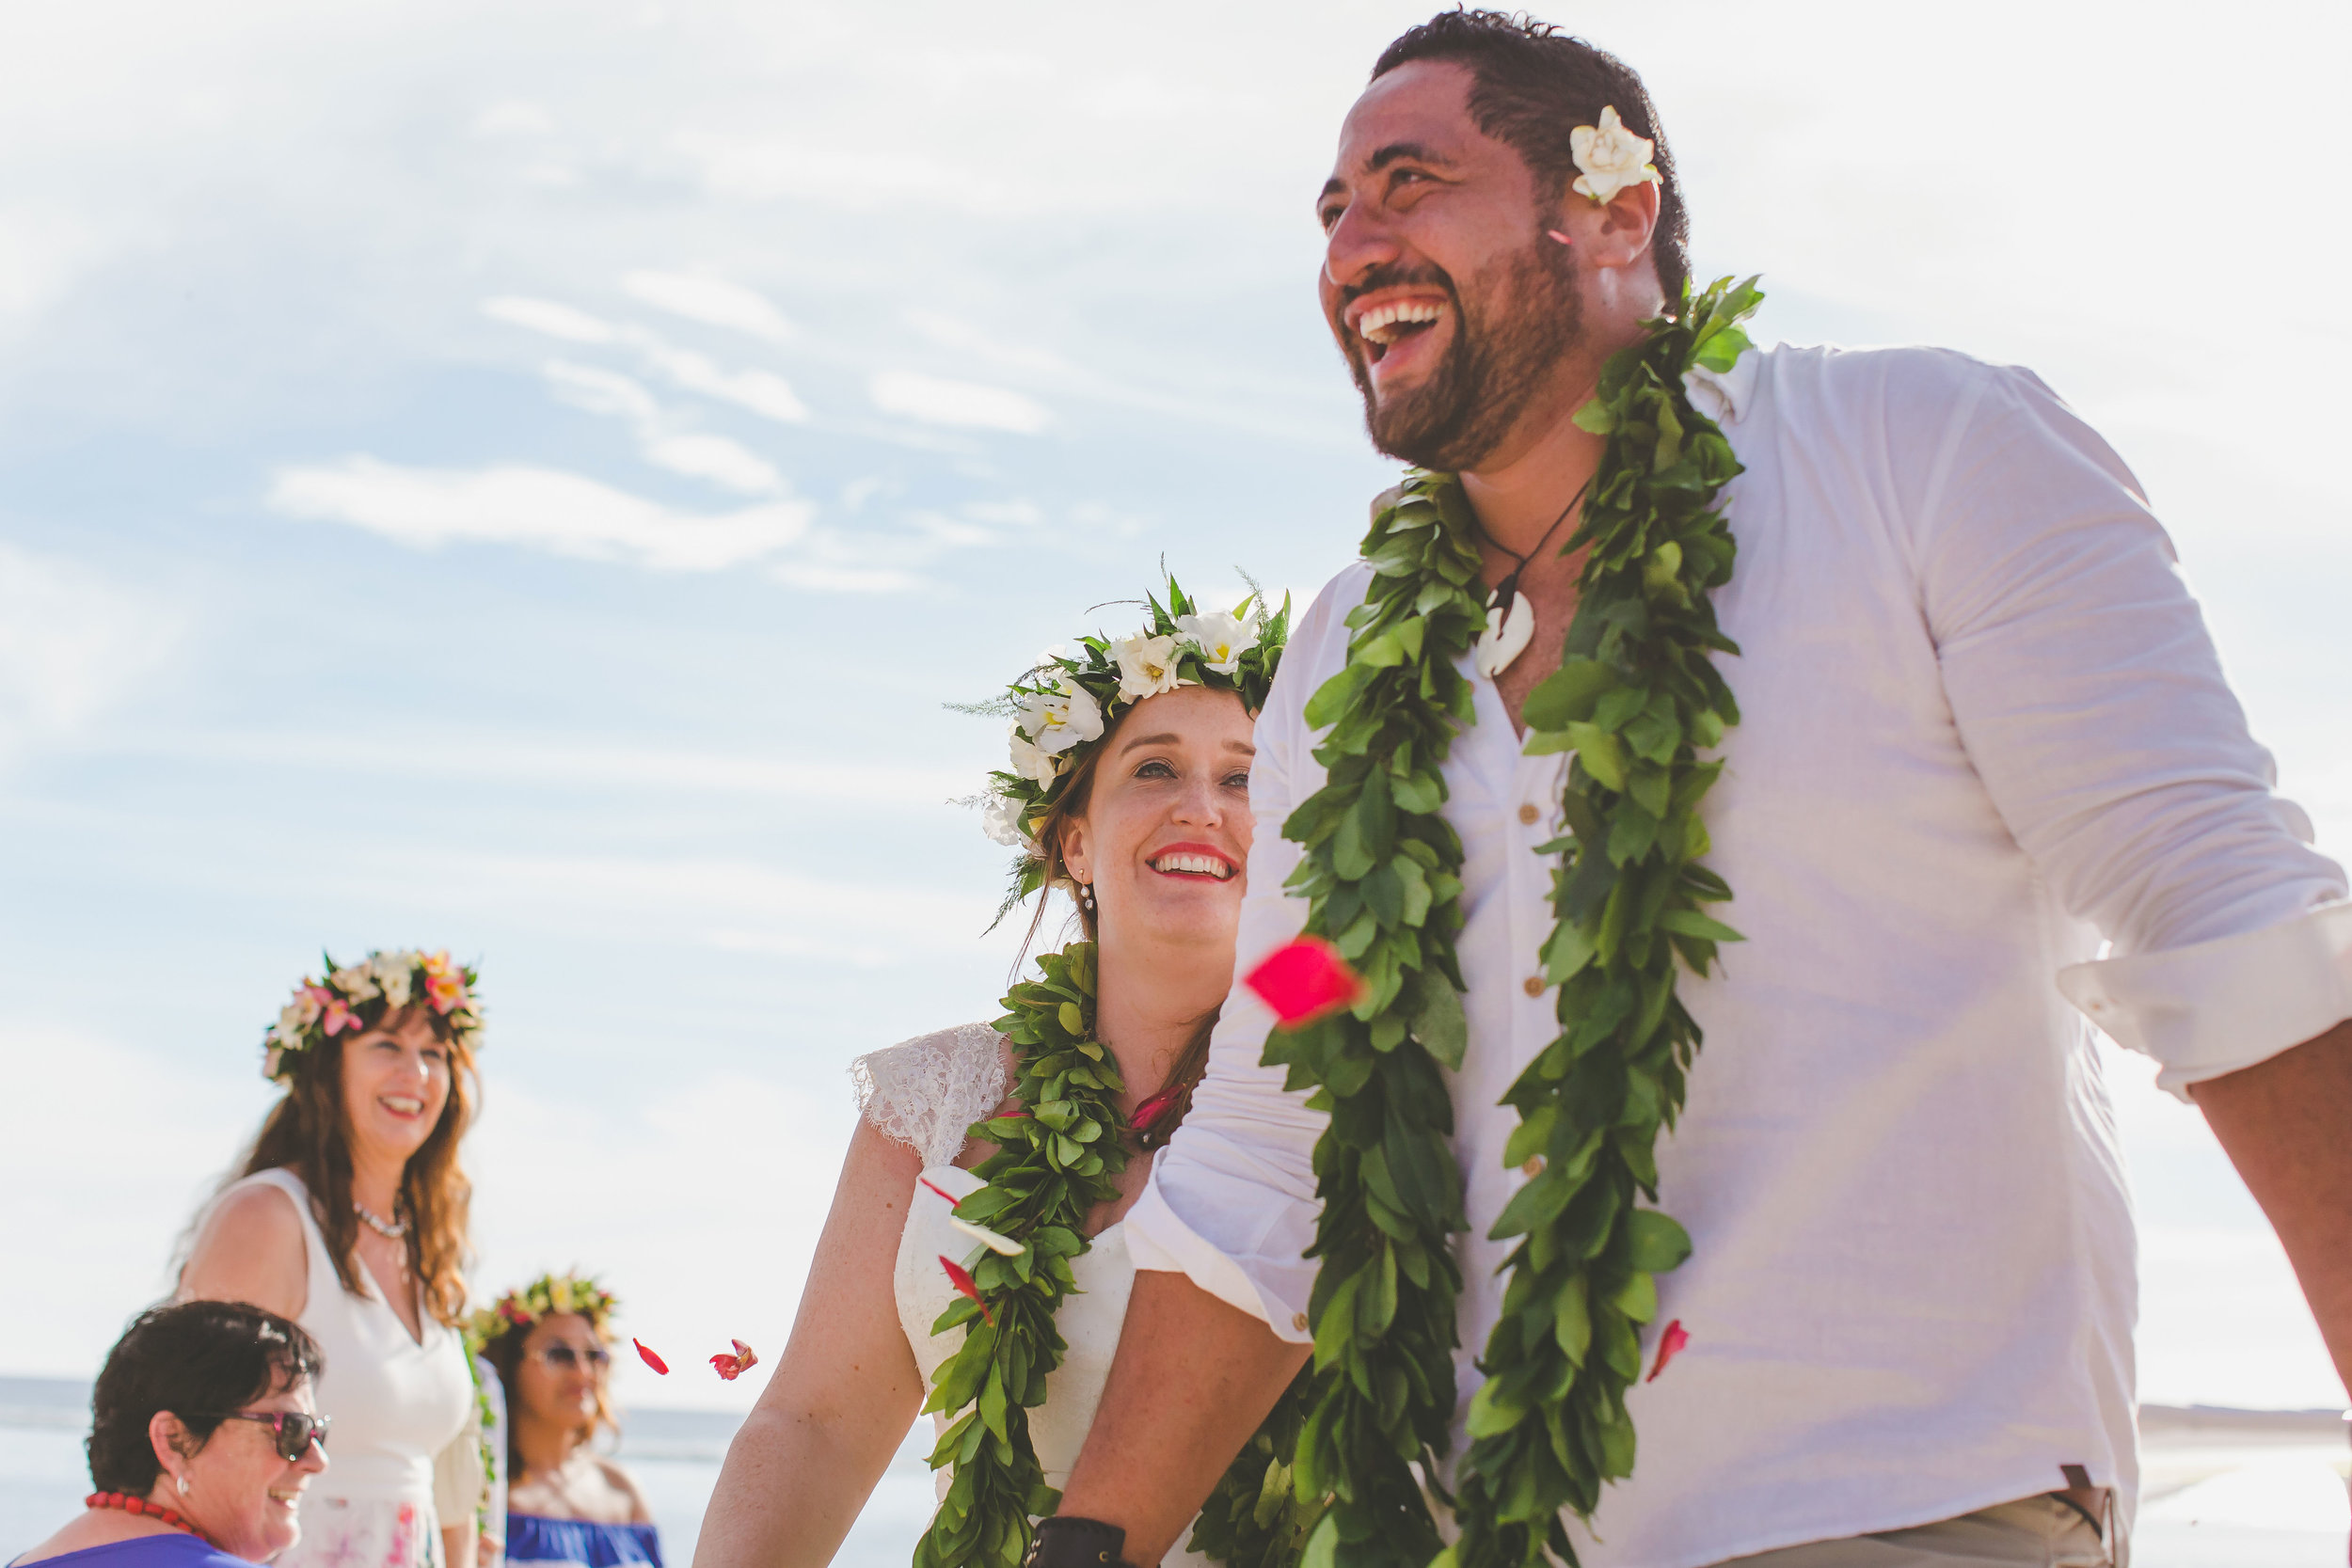 Beach wedding Cook Islands 